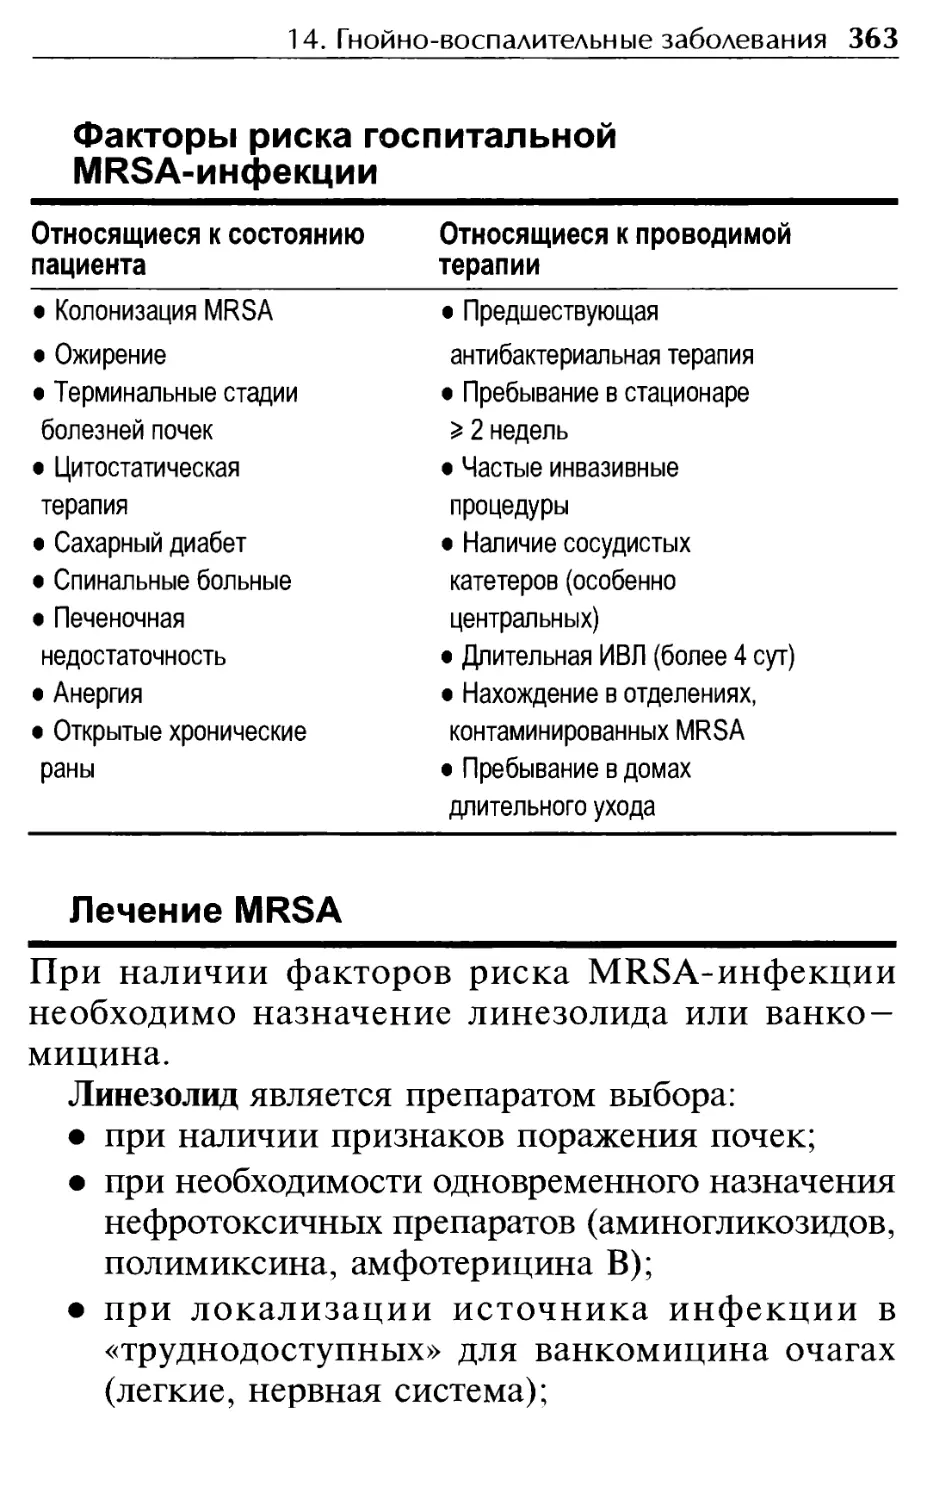 Факторы риска госпитальной MRSA-инфекции
Лечение MRSA